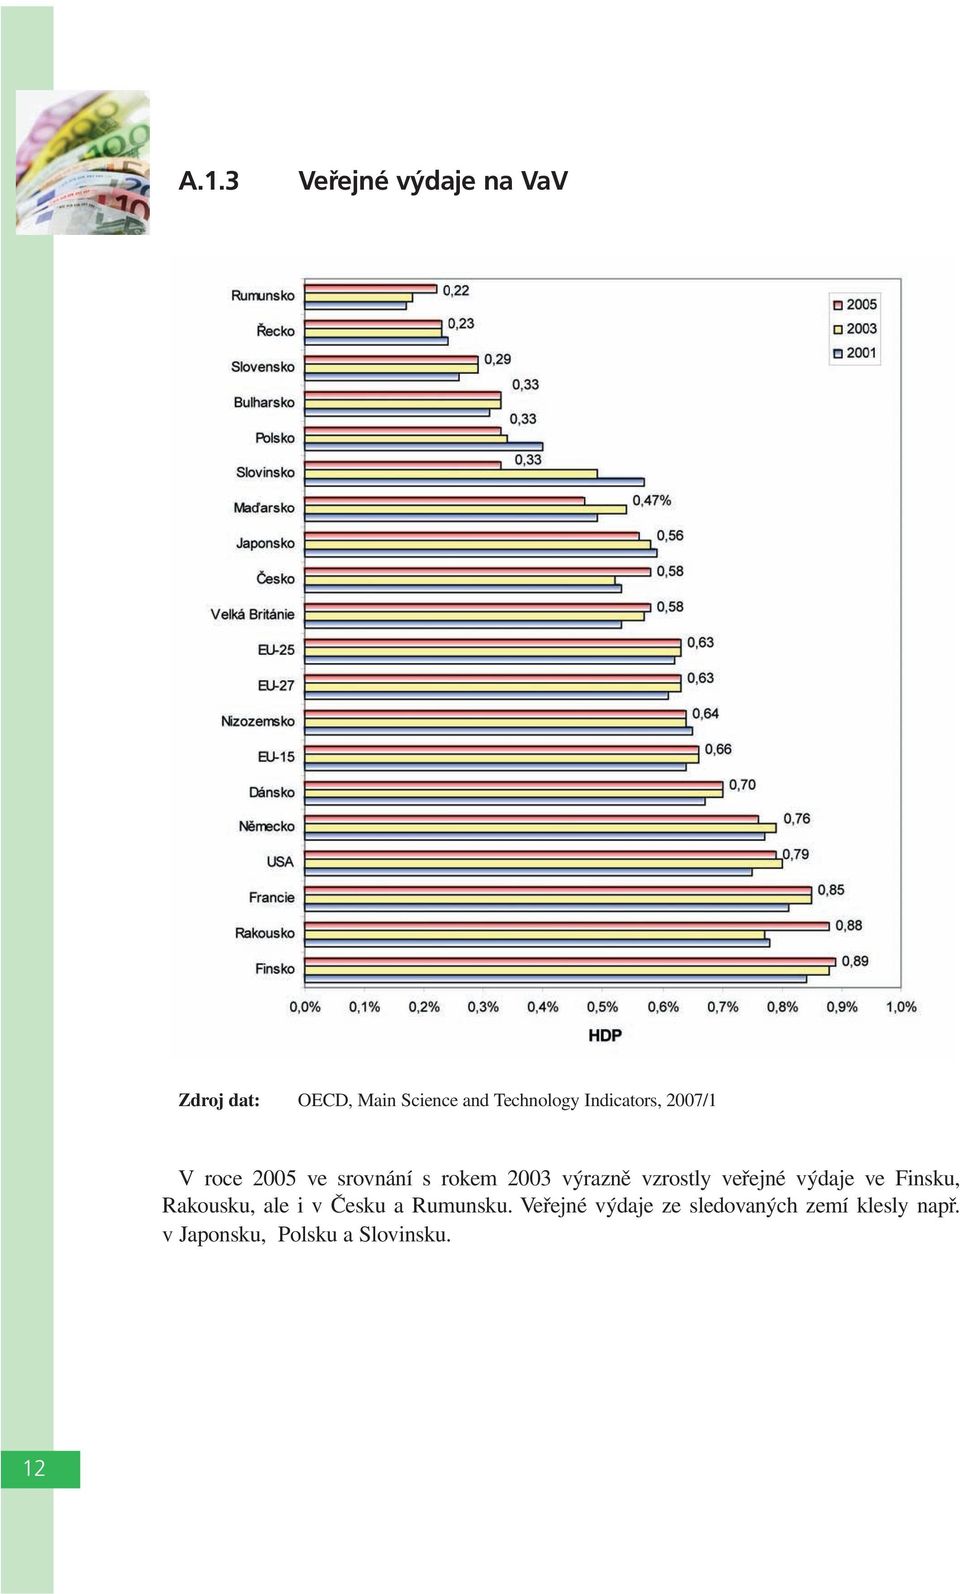 veřejné výdaje ve Finsku, Rakousku, ale i v Česku a Rumunsku.